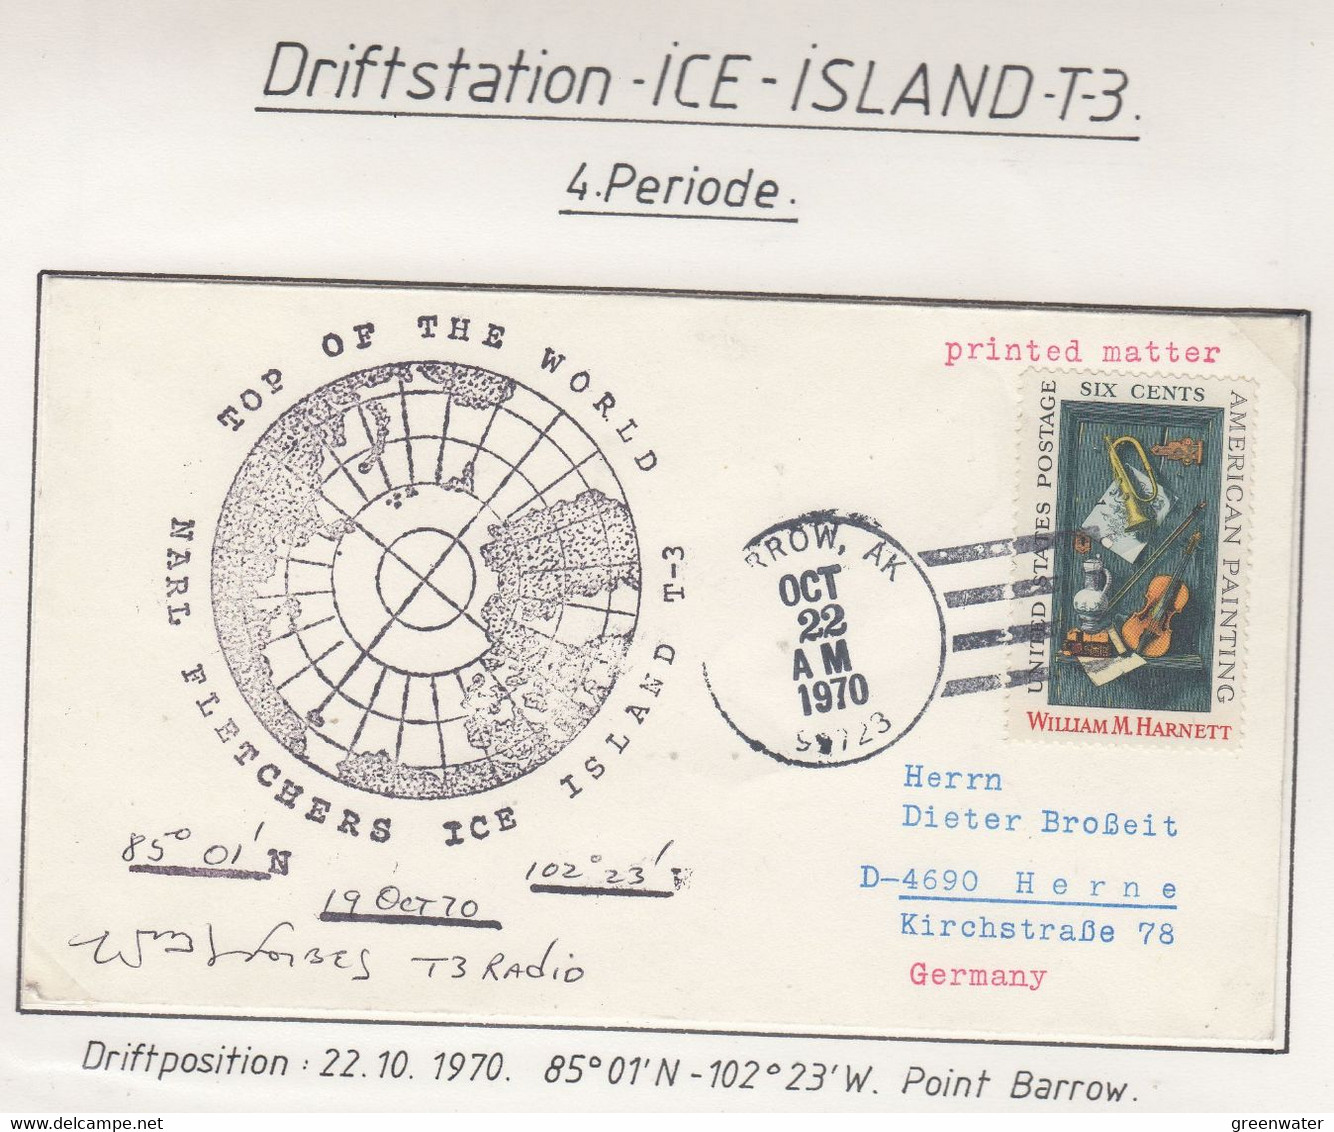 USA Driftstation ICE-ISLAND T-3 Cover Fletcher's Ice Island T-3 Periode 4 Ca OCT 23 1970  Signature (DR133) - Forschungsstationen & Arctic Driftstationen